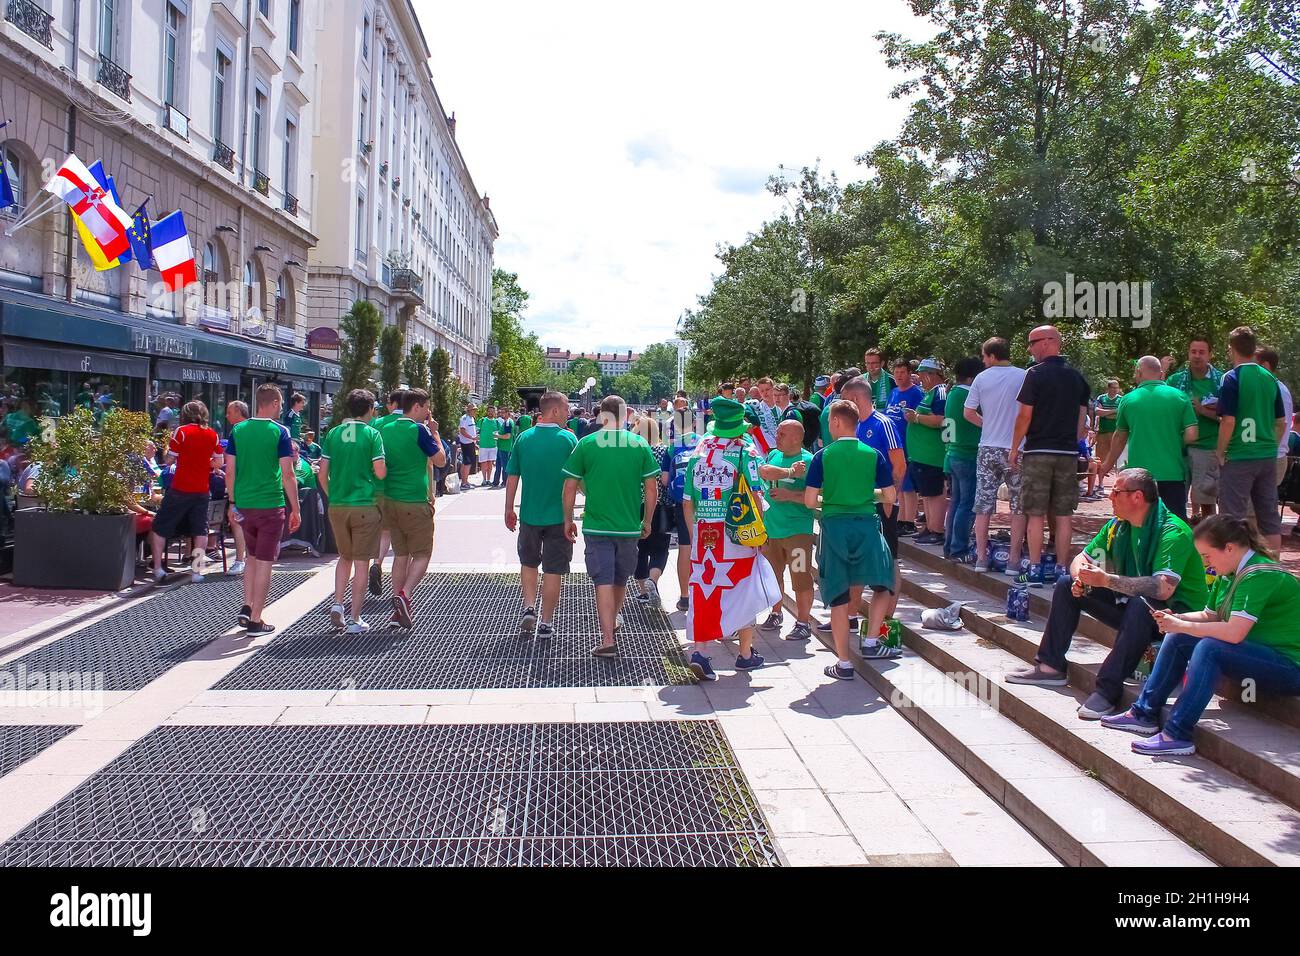 Lione, Francia - 16 giugno 2016: Tifosi dell'Irlanda del Nord al campionato europeo di calcio EURO 2016 Foto Stock